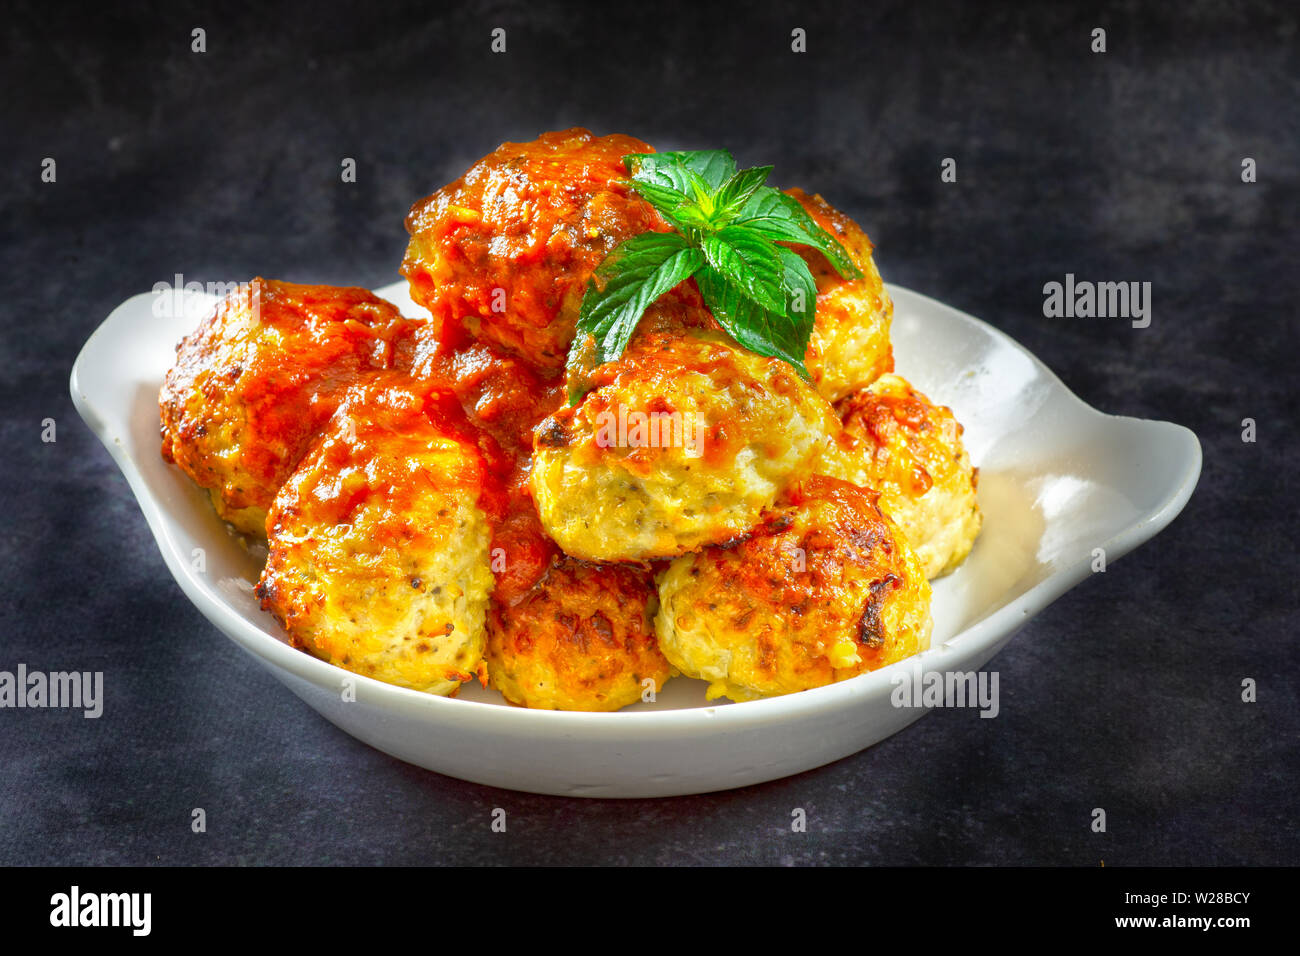 Boulettes de poulet à la sauce tomate dans un bol blanc. Grungy. charbon En bonne santé, riche en protéines, les calories des repas. Banque D'Images